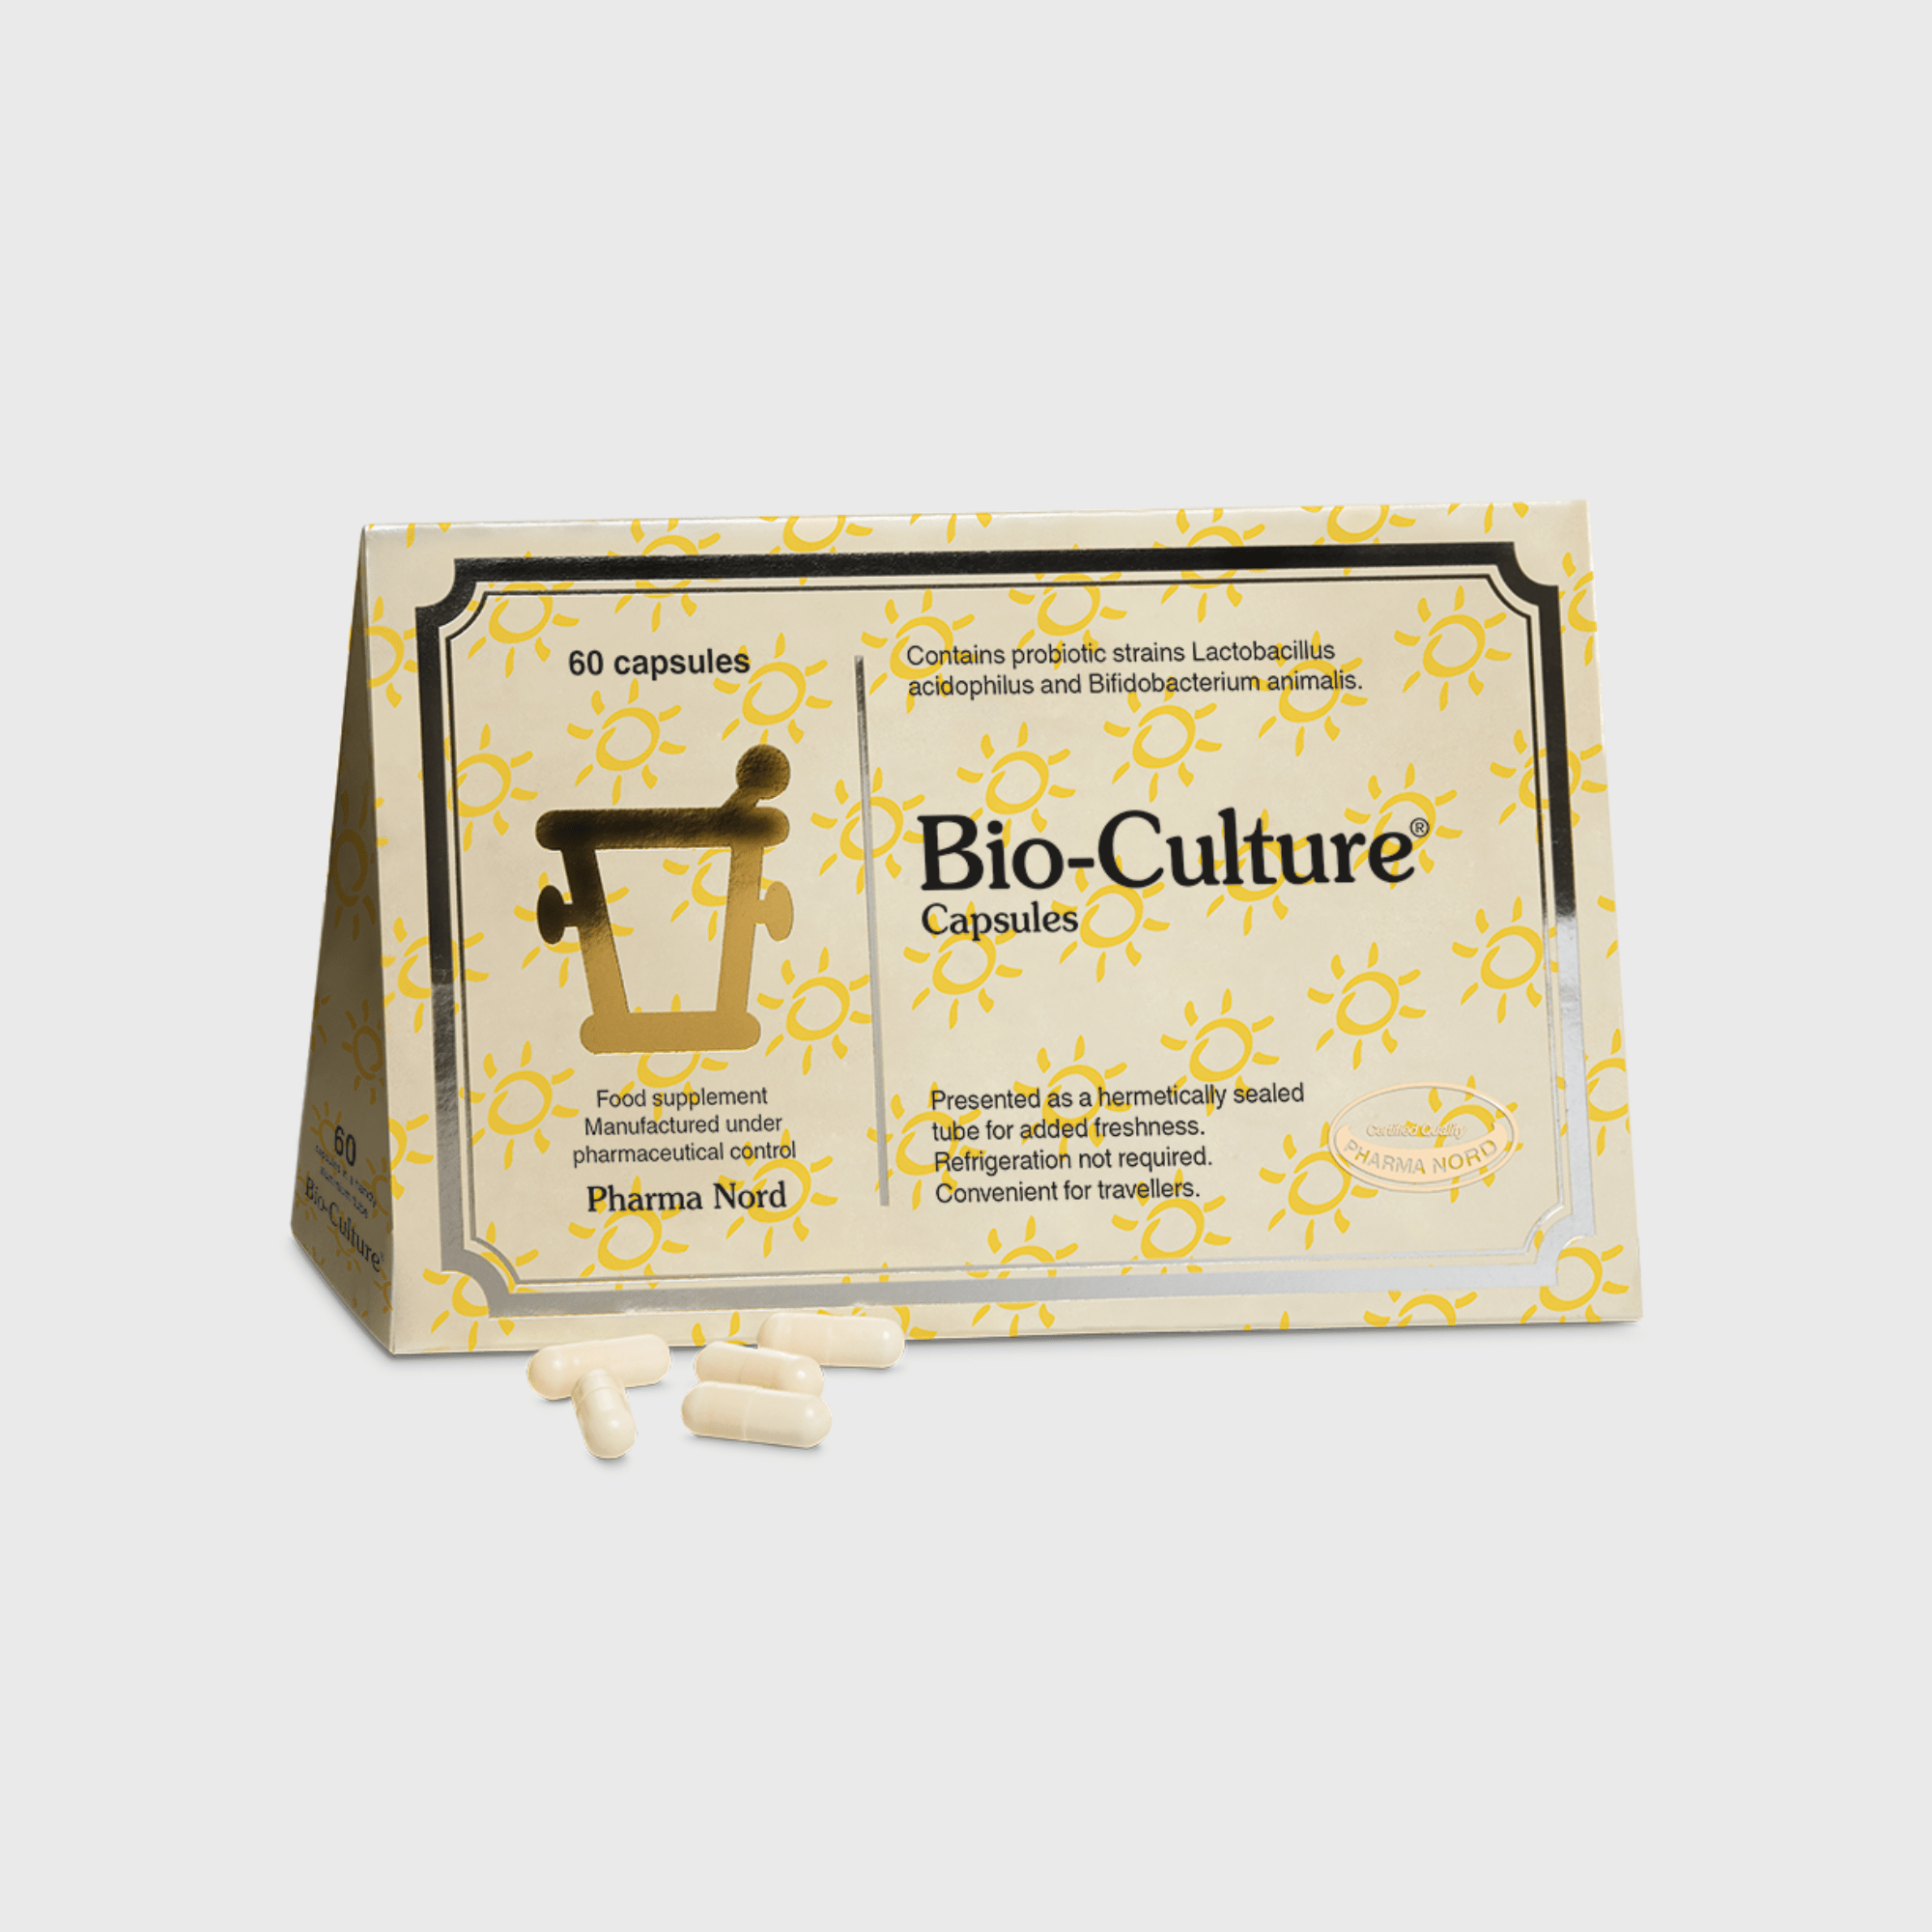 Bio-Culture